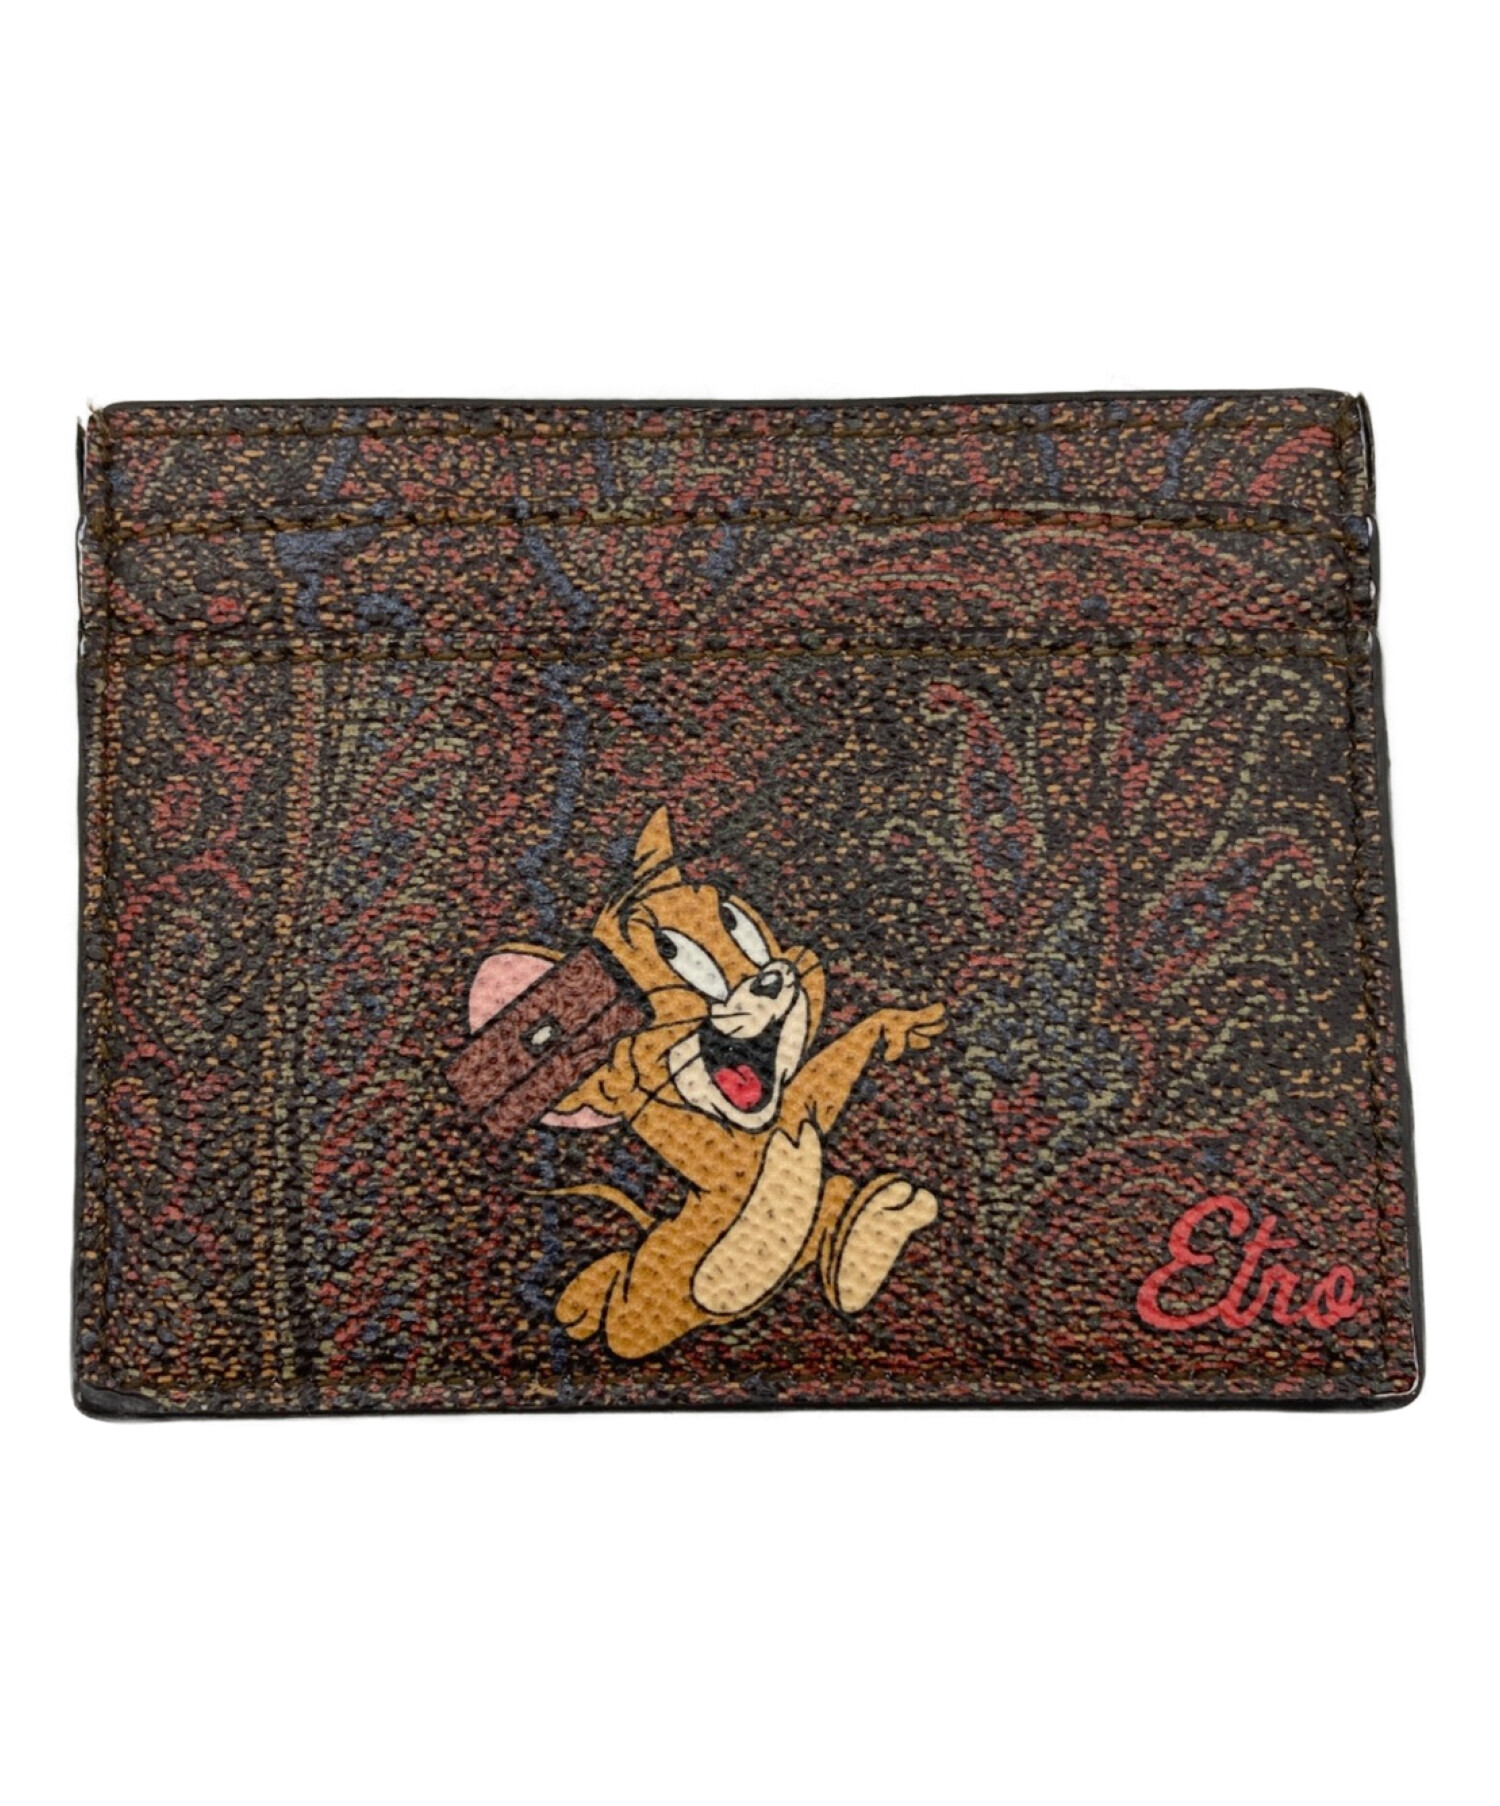 ETRO (エトロ) Tom and Jerry (トムトジェリー) カードケース ブラウン